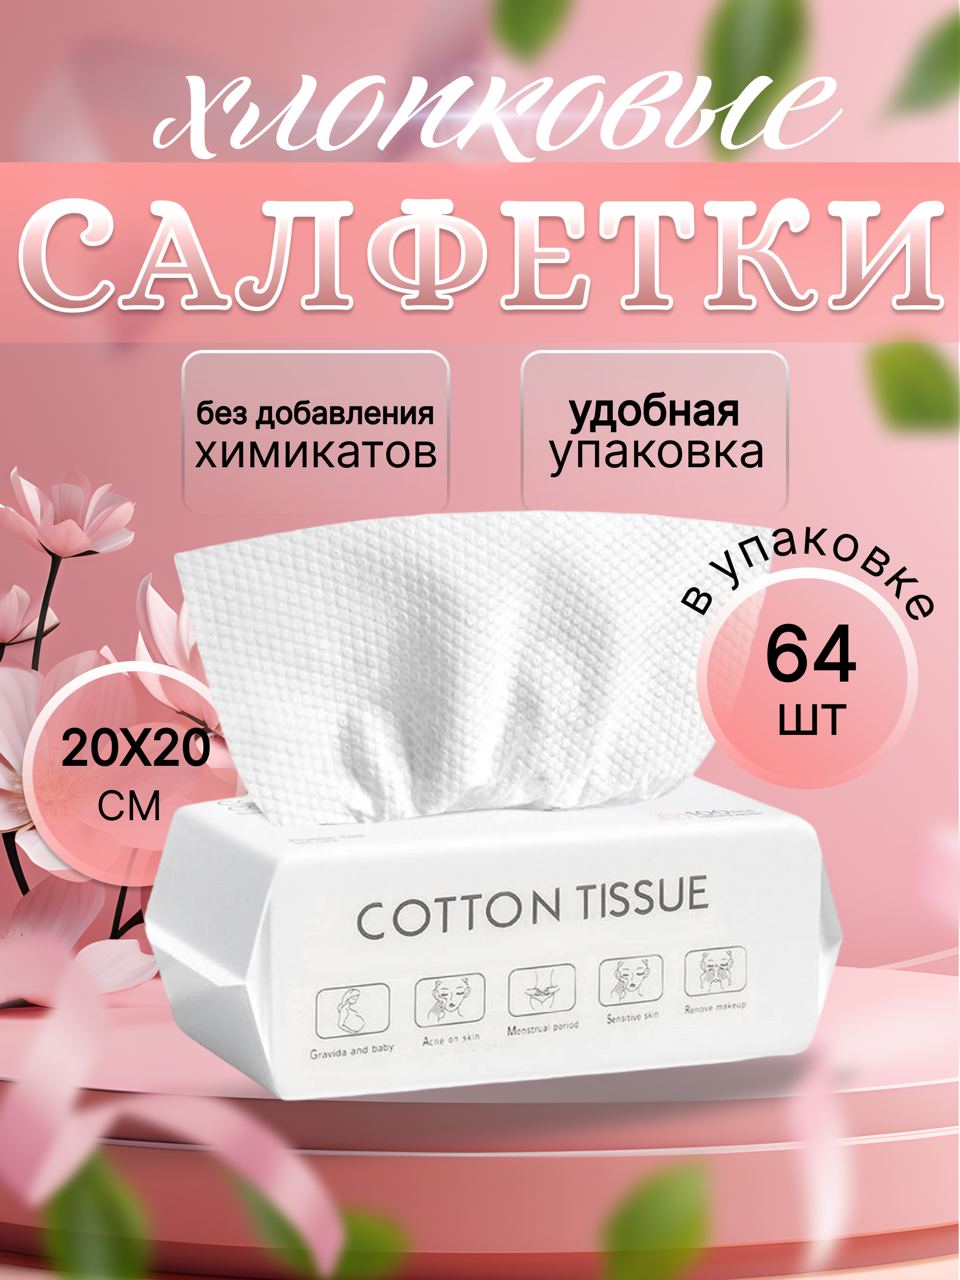 Салфетки полотенца одноразовые ECOCRISTAL для лица, 64 шт kartika полотенца бумажные кухонные с рисунком микки маус 3 слоя 2